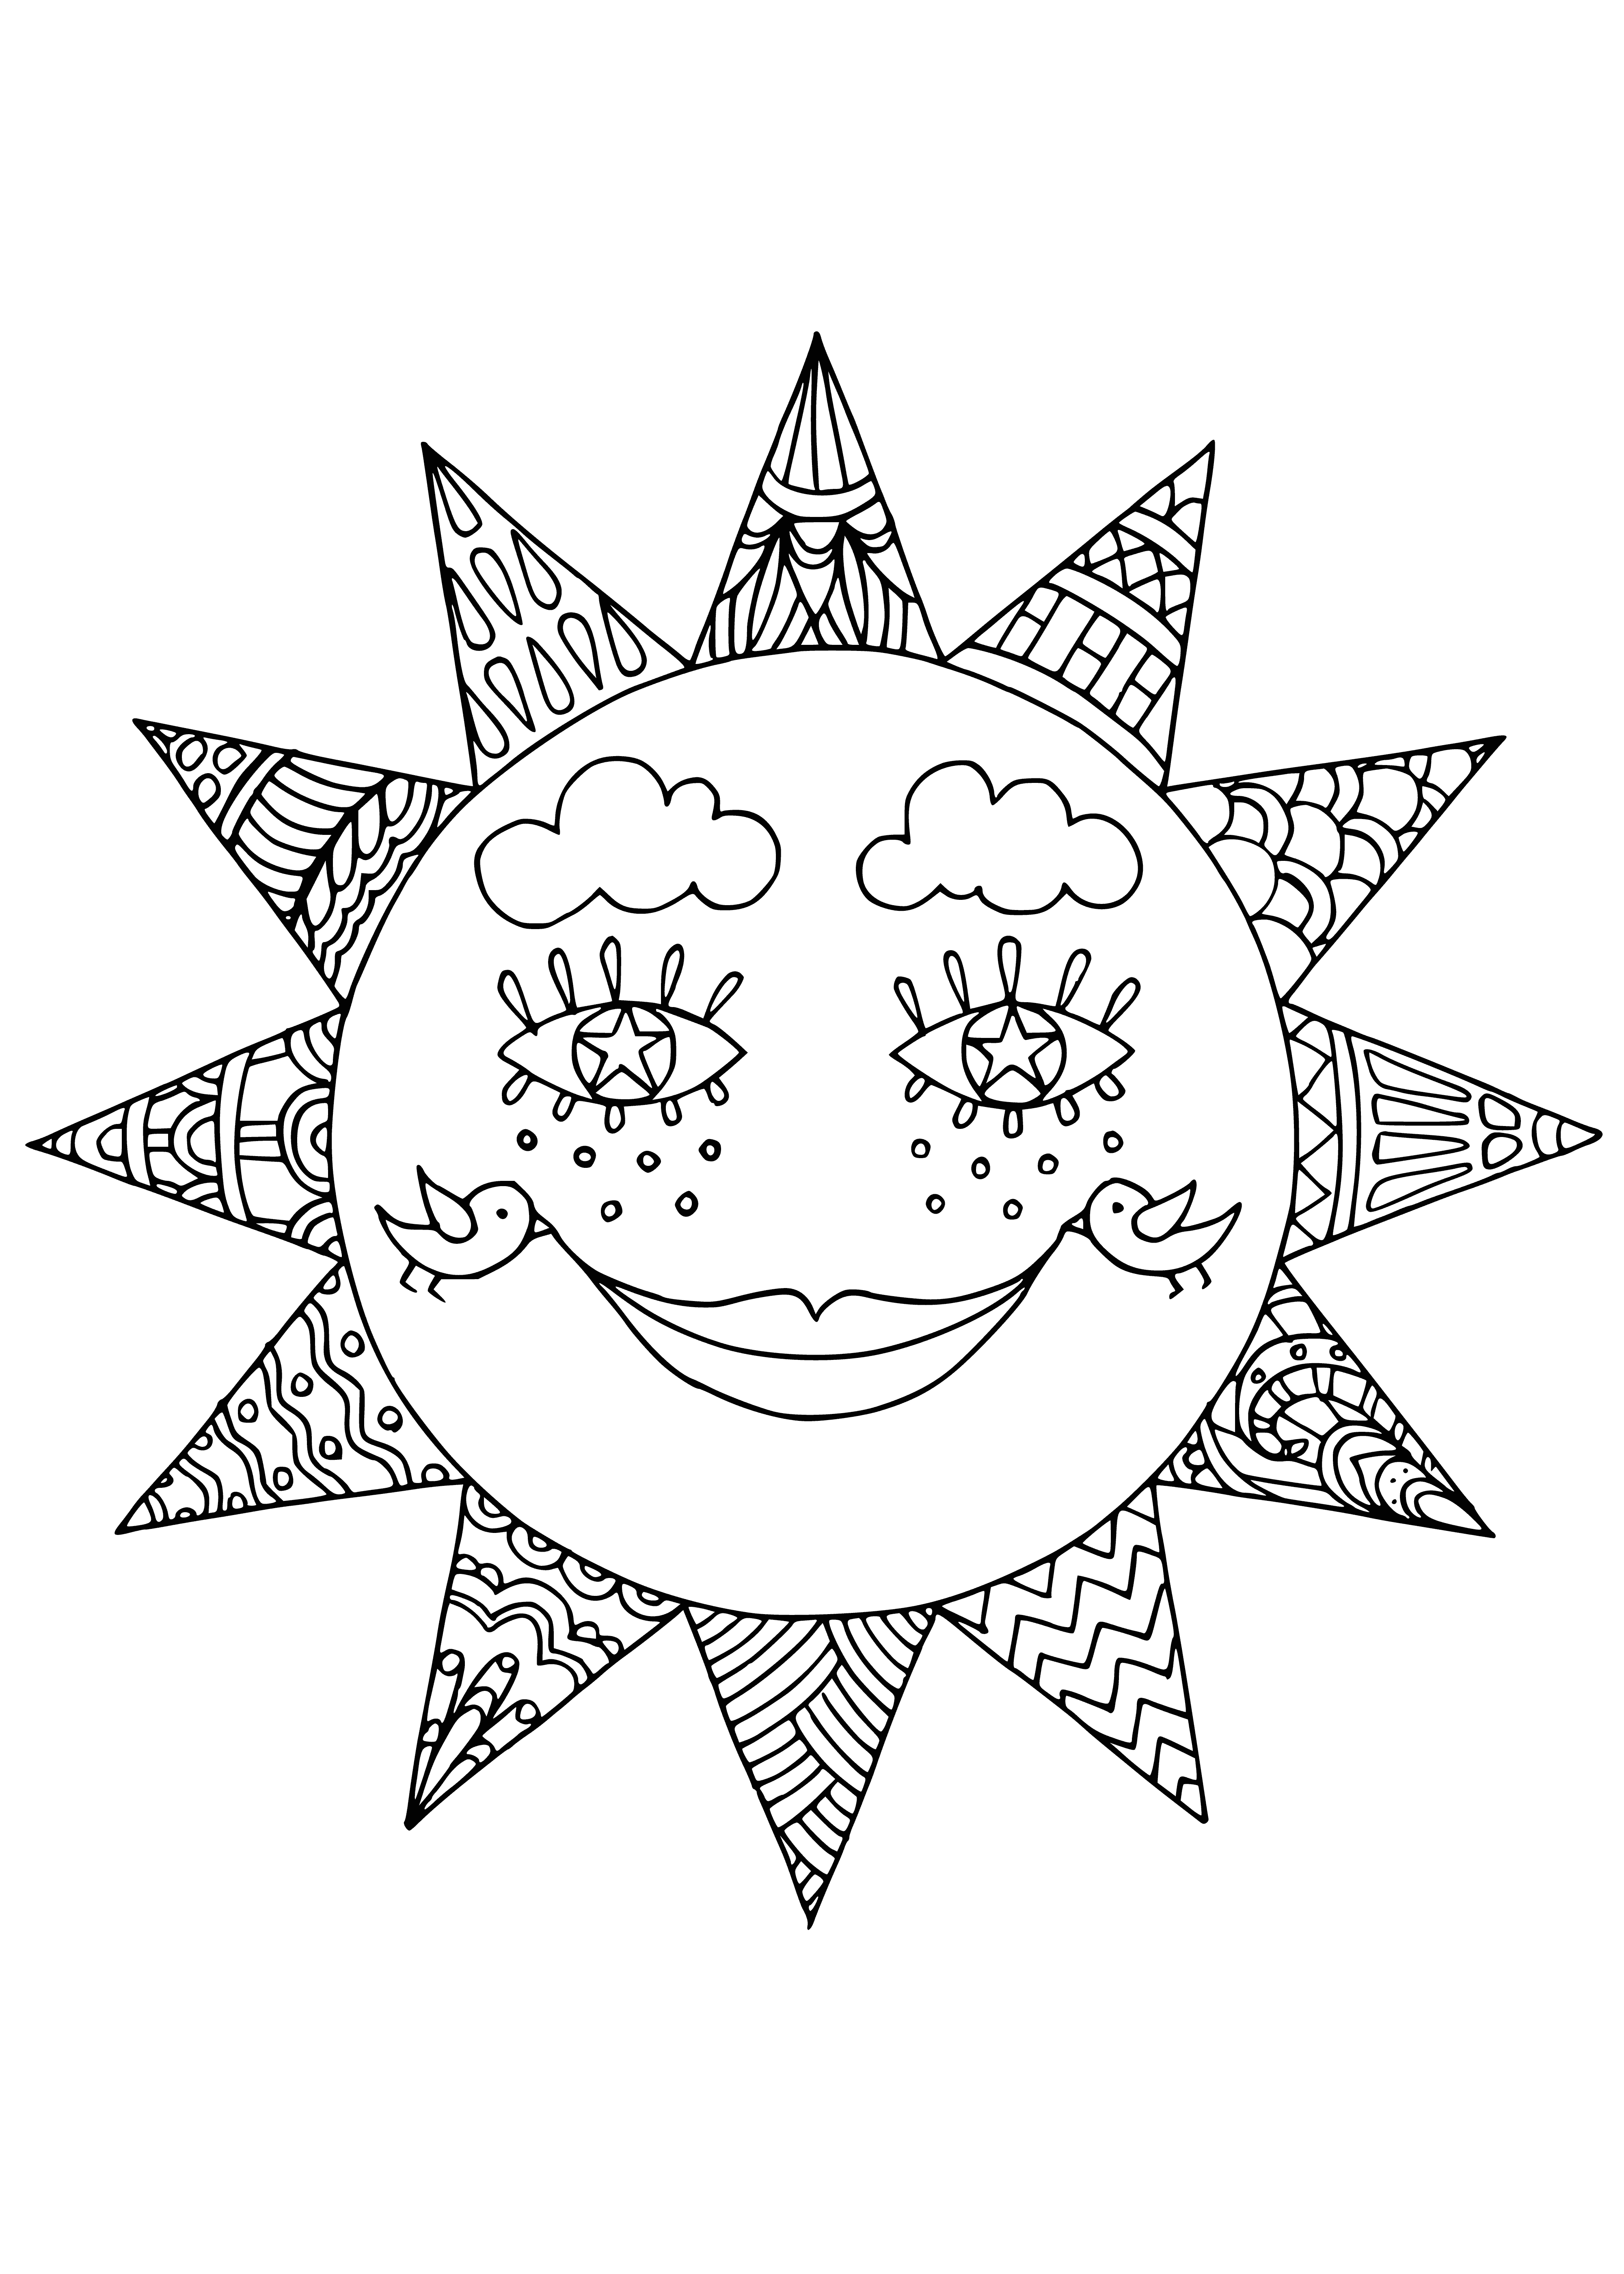 Die Sonne ist ein Symbol der Fastnacht Malseite